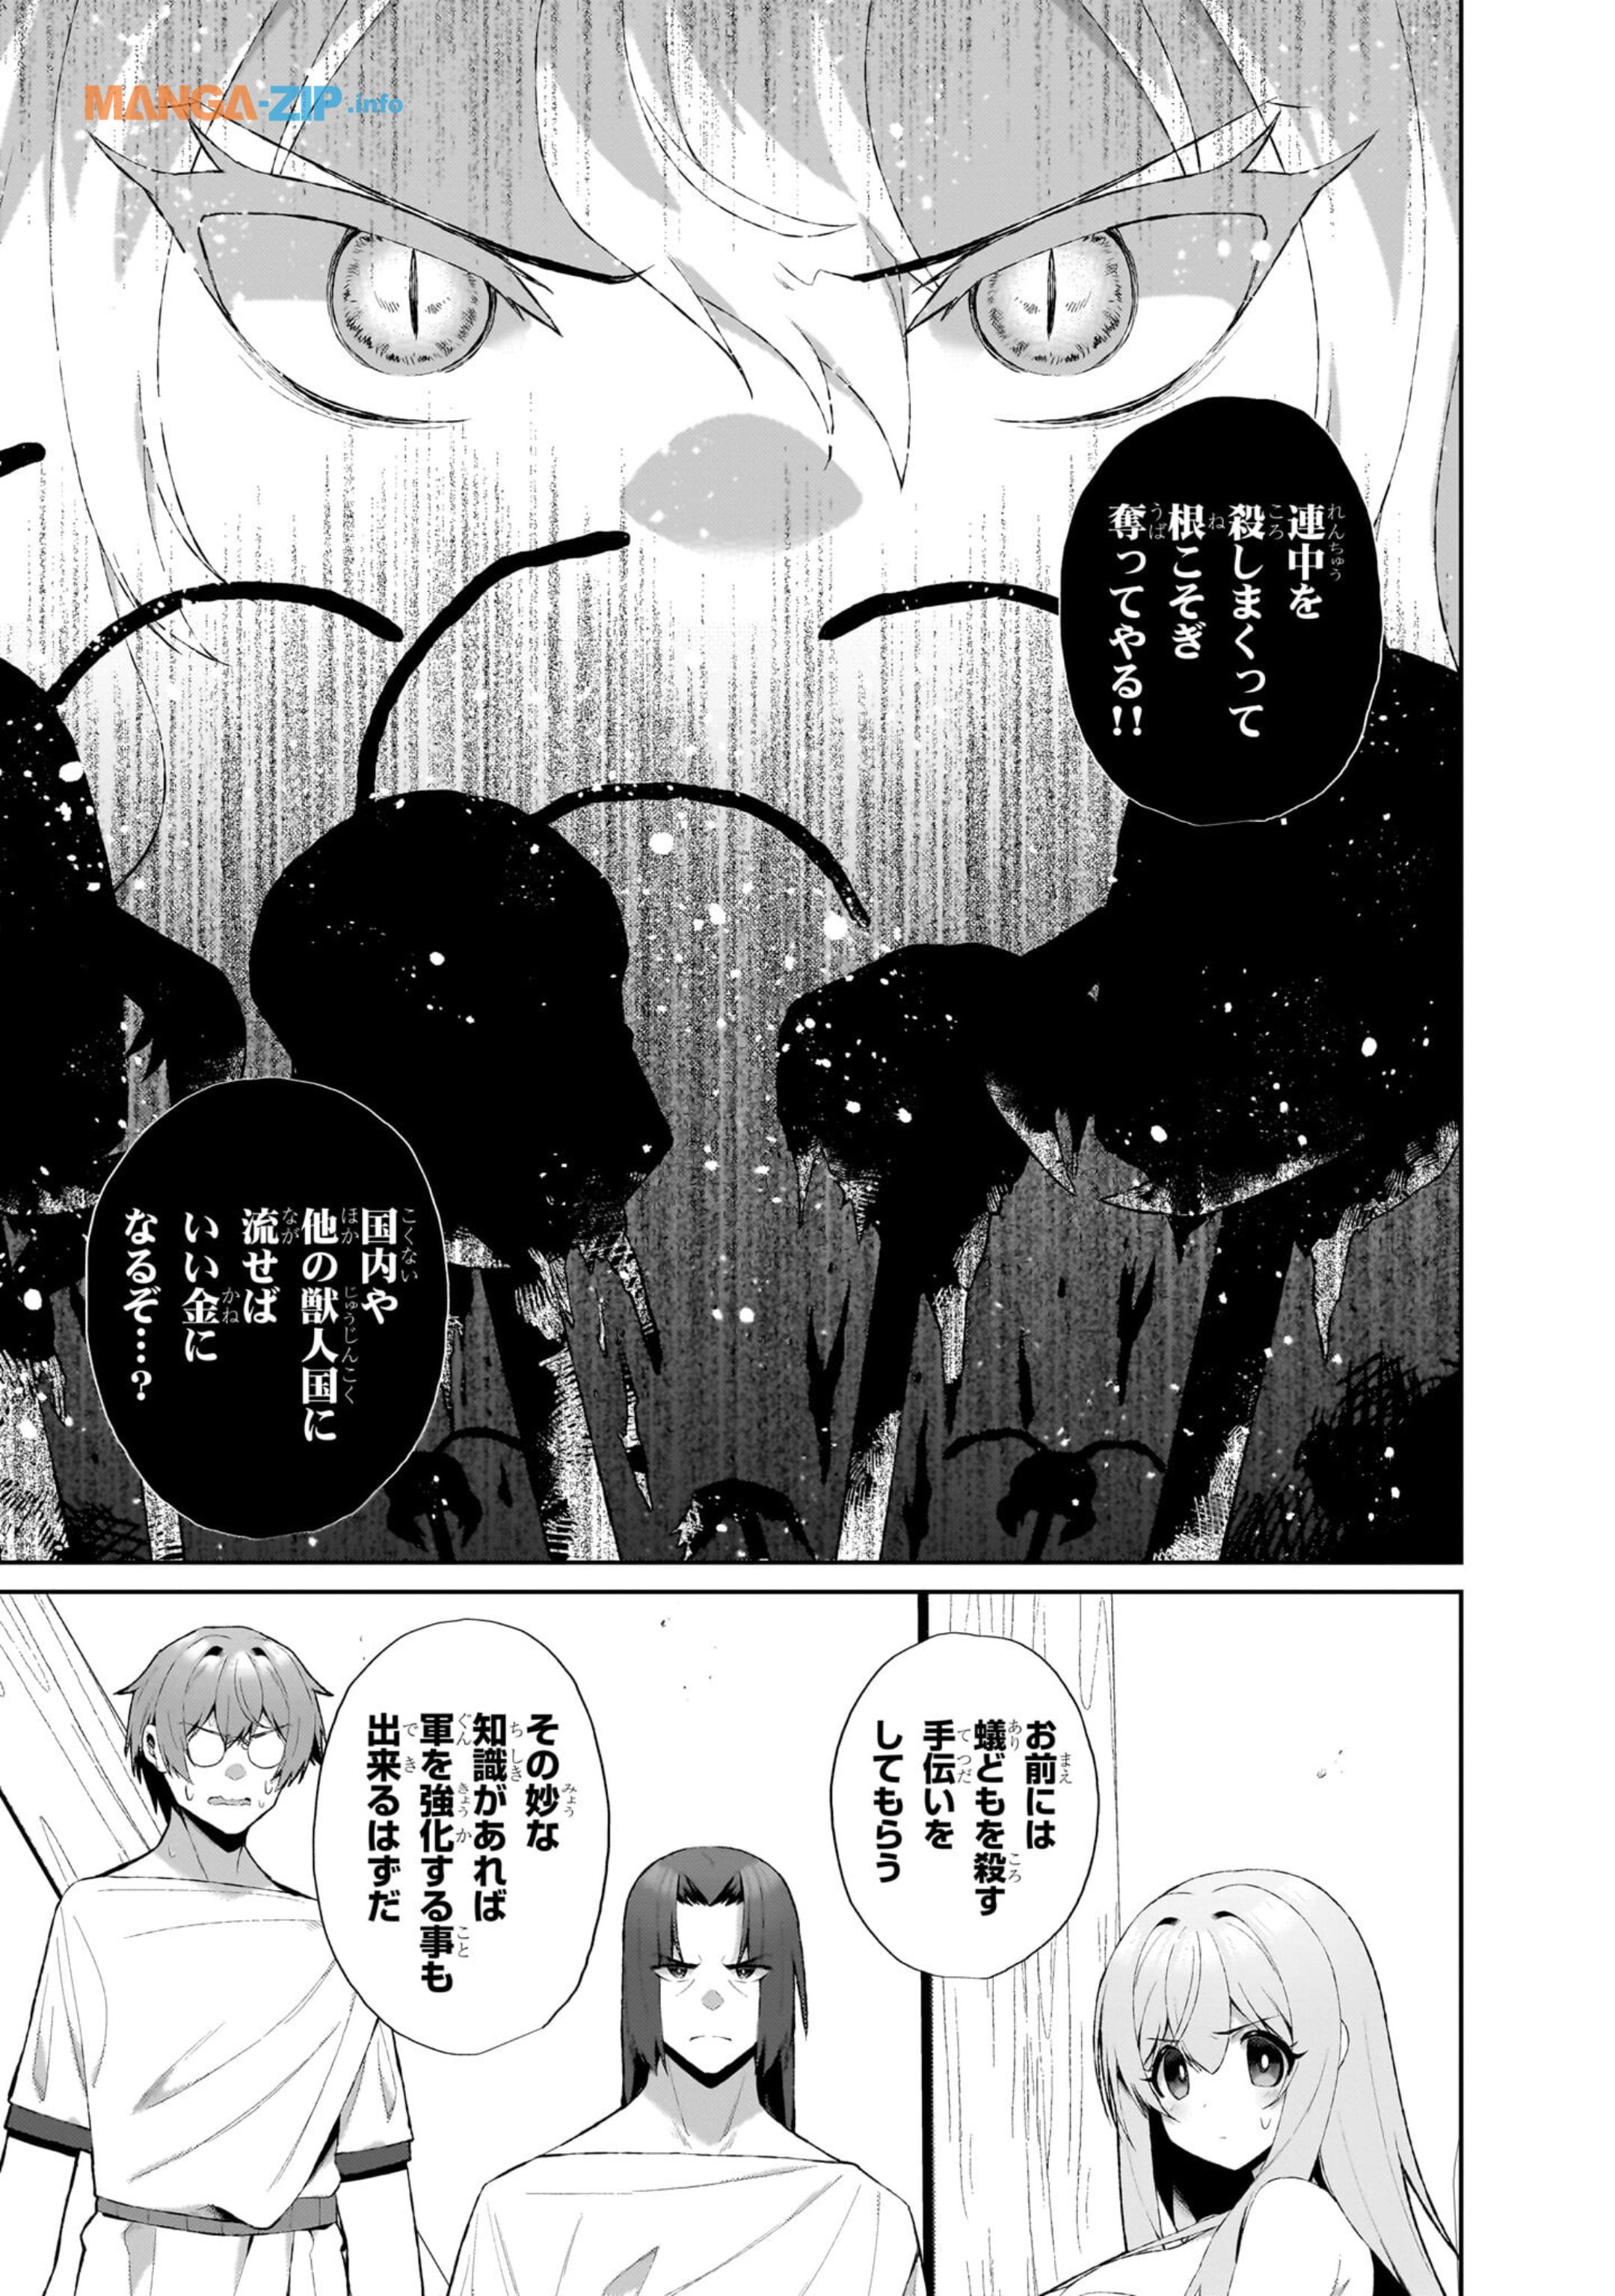 Nogaku Hakase no Isekai Muso Kinki no Chishiki de Kizuku Monster Musume Harem - Chapter 2.2 - Page 17